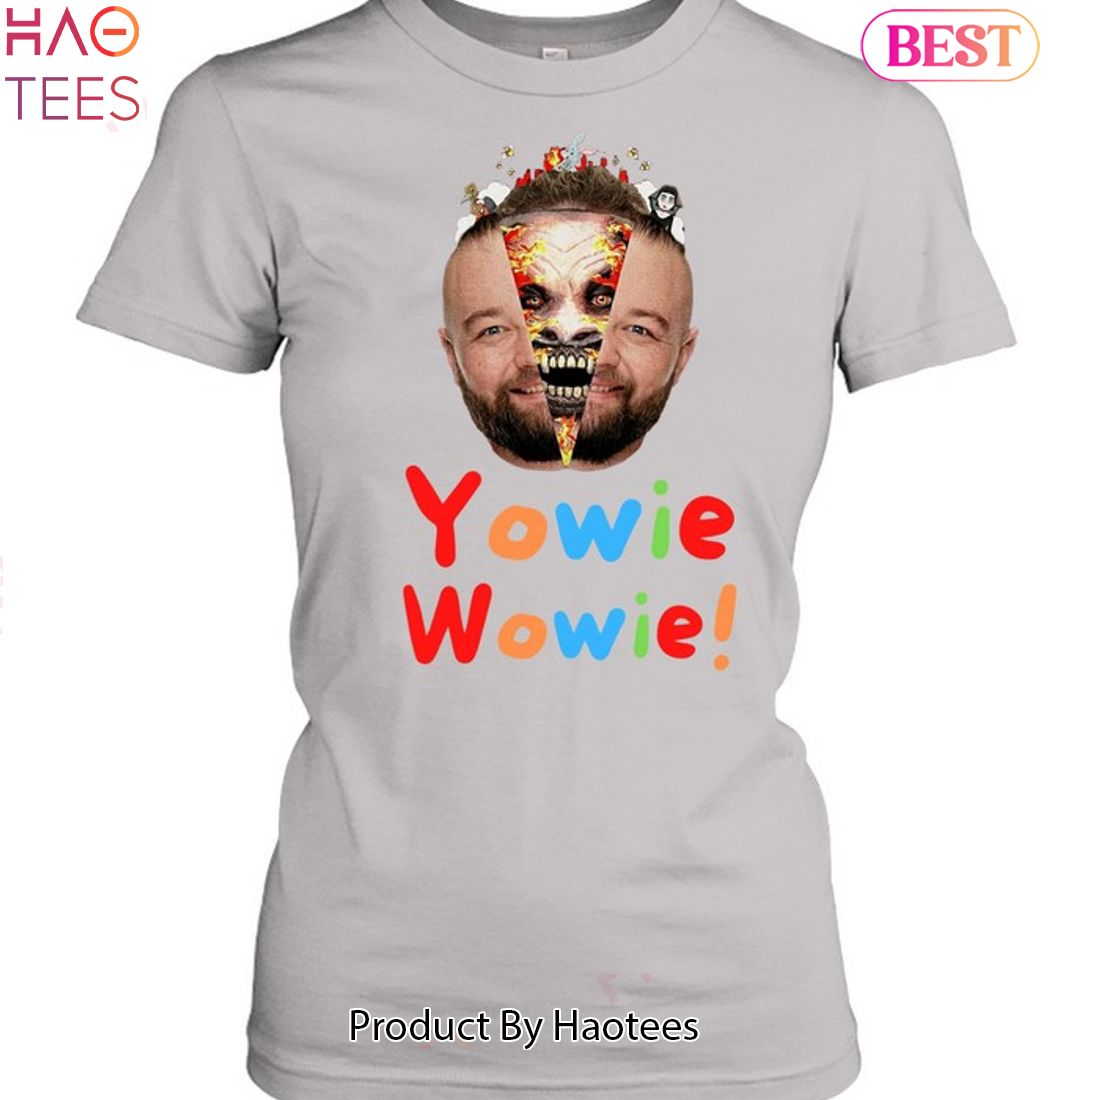 NEW Bray Wyatt Yowie Wowie Unisex T-Shirt